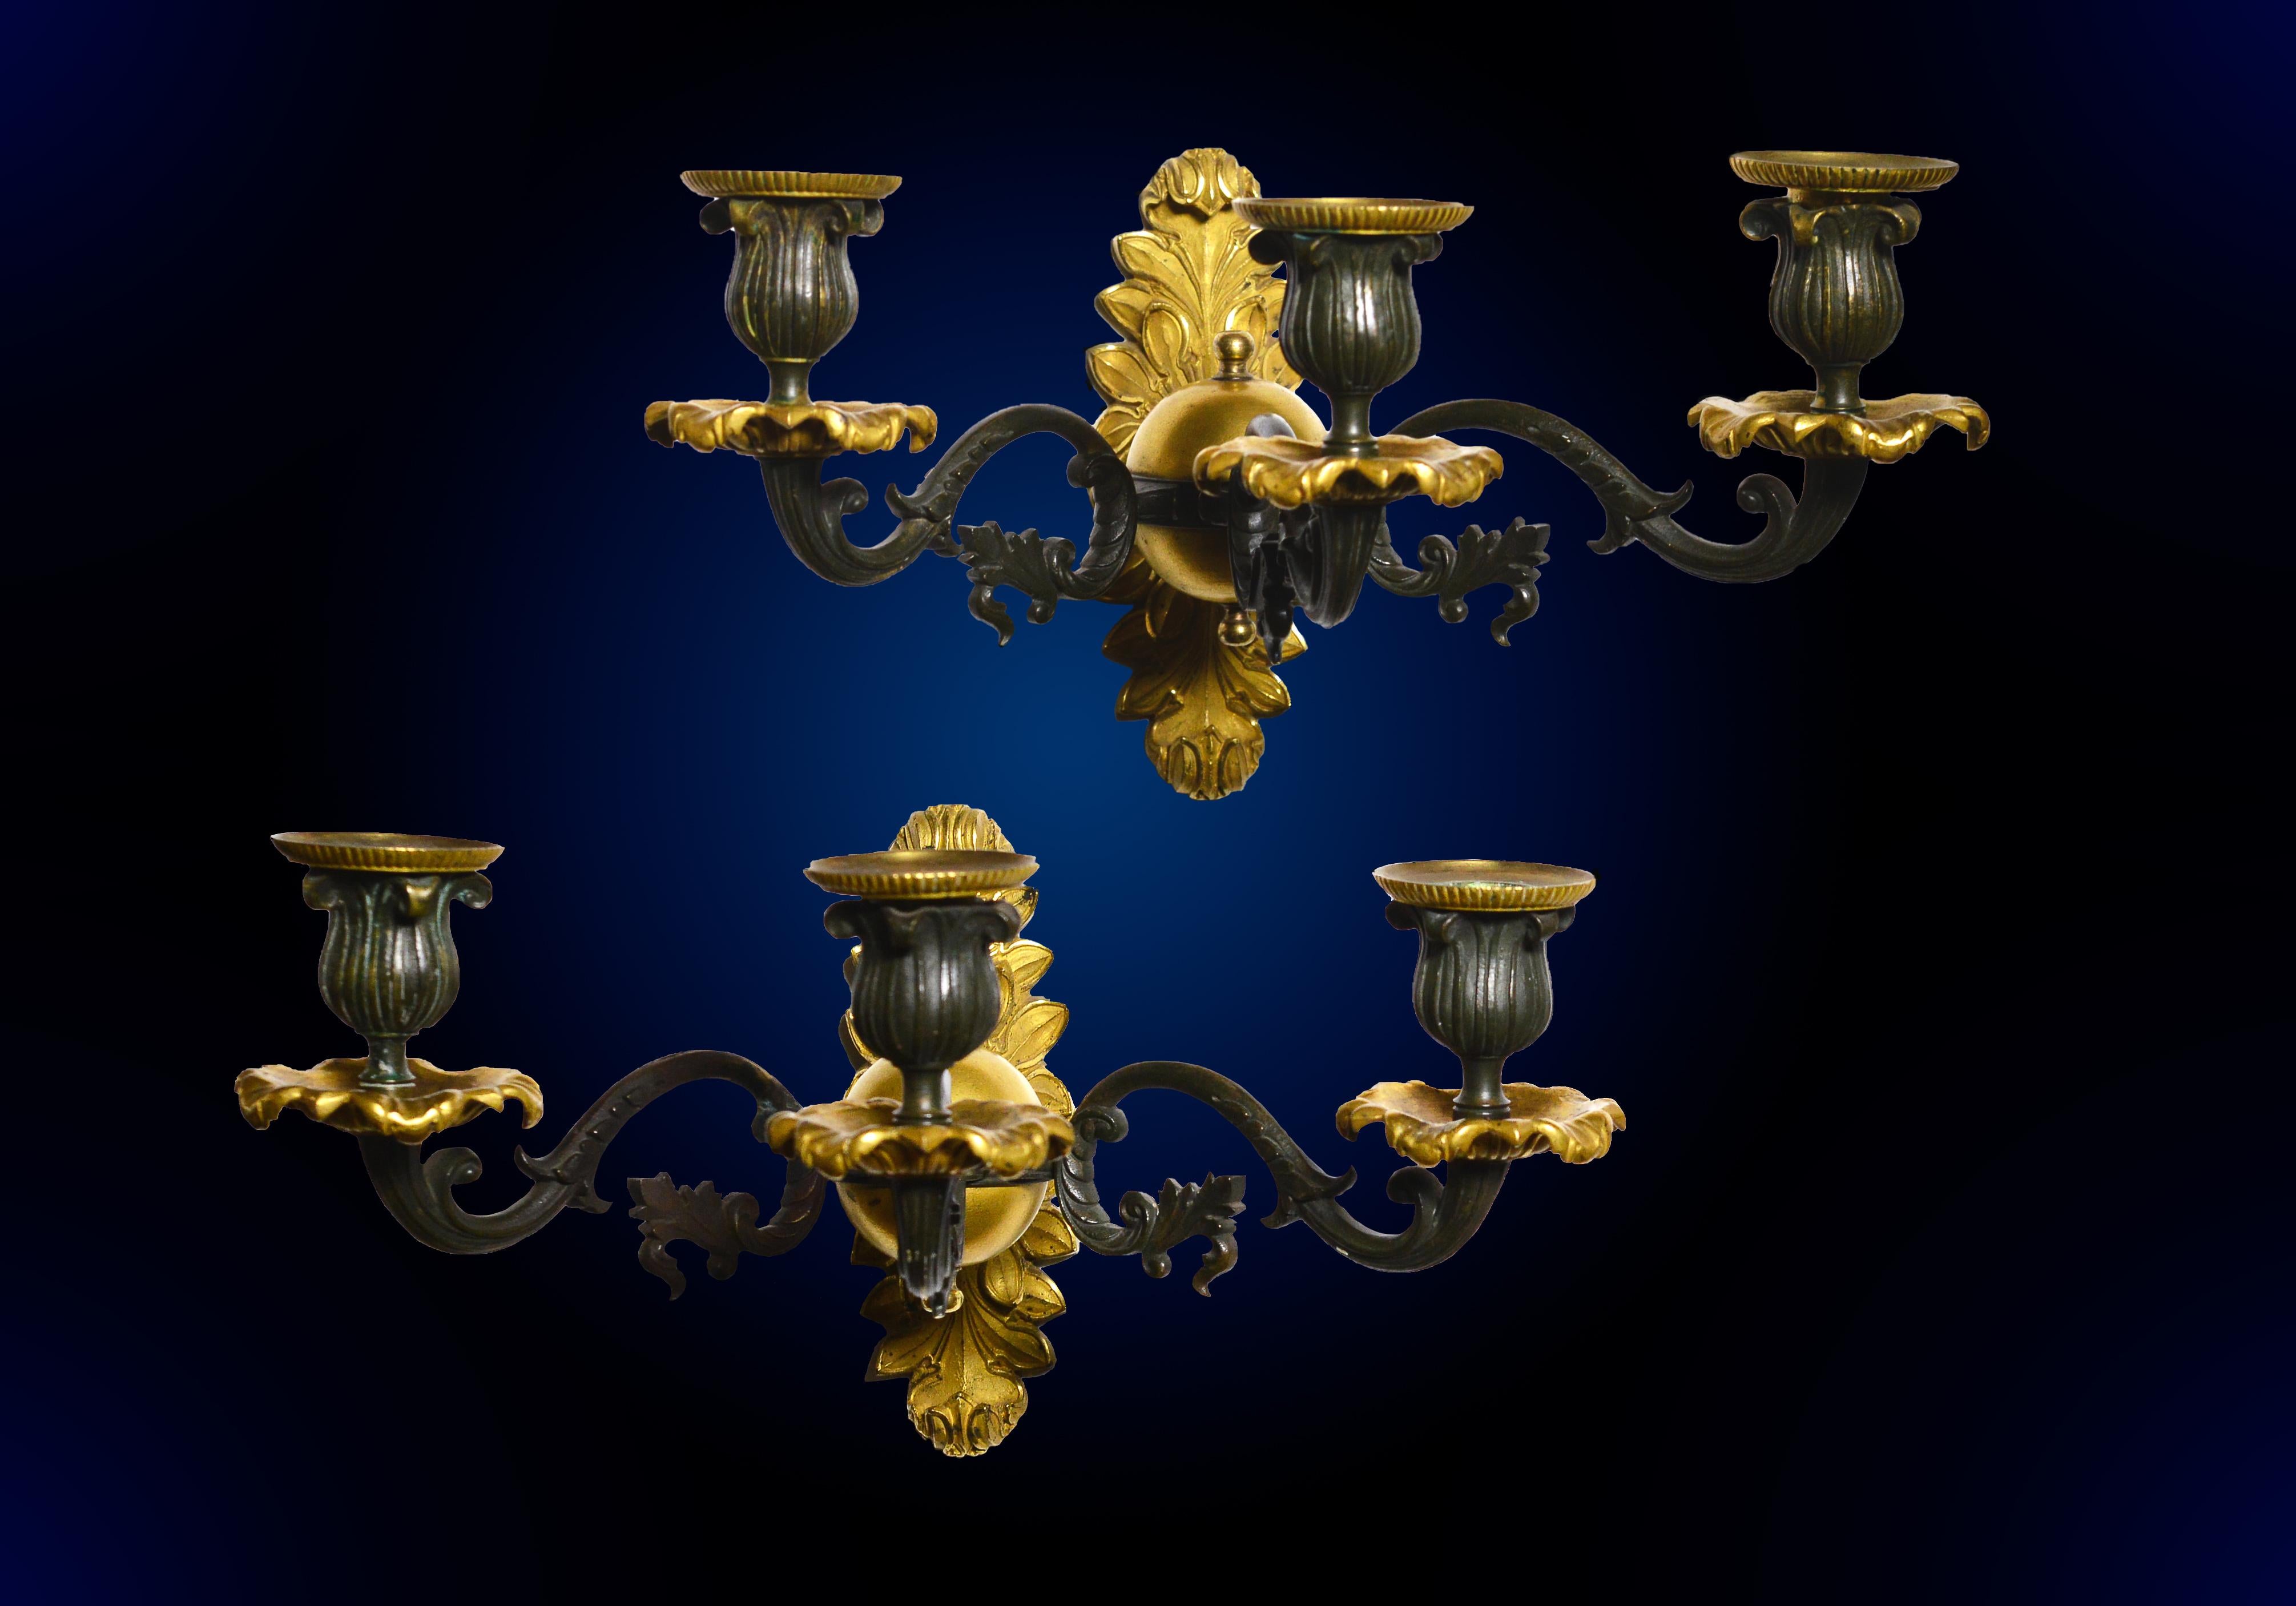 Sehr gute, stilvolle und detailreiche, handziselierte und vergoldete (Ormolu) Bronzeleuchter im Stil des Neoklassizismus (auch bekannt als Empire-Stil). Hergestellt im 19. Jahrhundert in Kontinentaleuropa.
Größe ca.: 17 cm hoch, 33 cm breit und 26